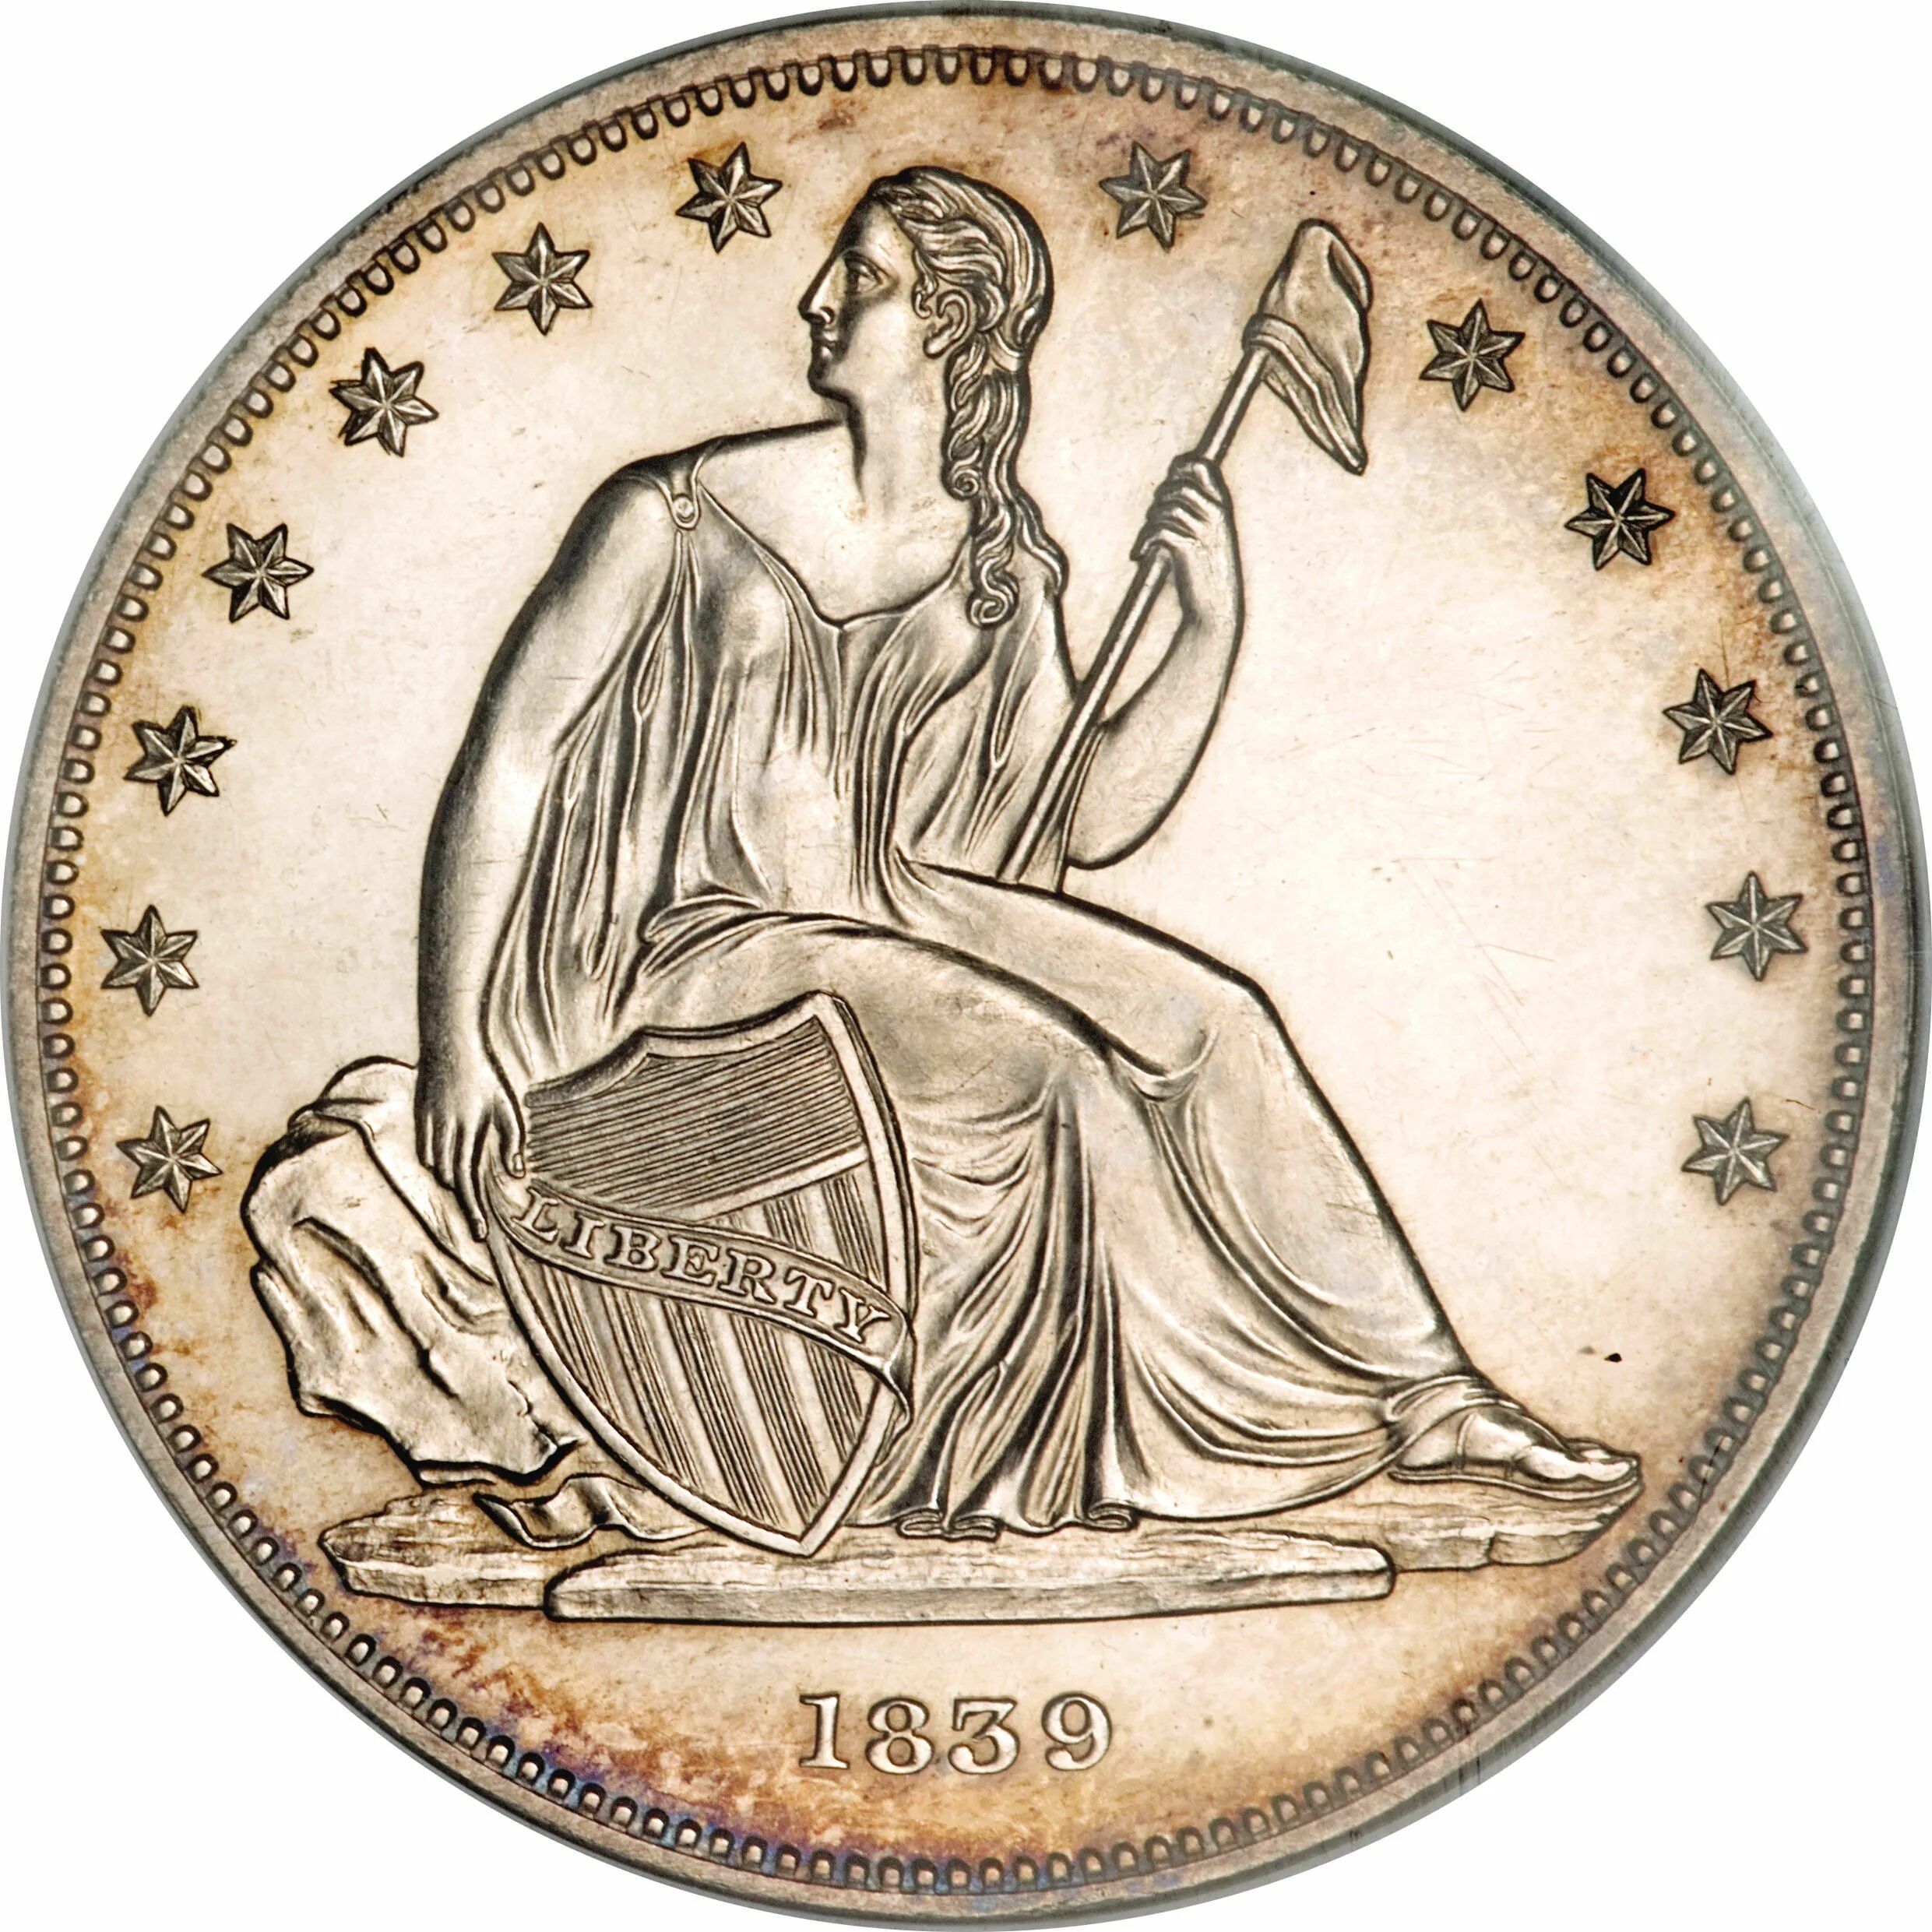 Е 1 доллар. Доллар 1839. Один доллар. Серебряный доллар США 1836 года. Полдоллара США монета.